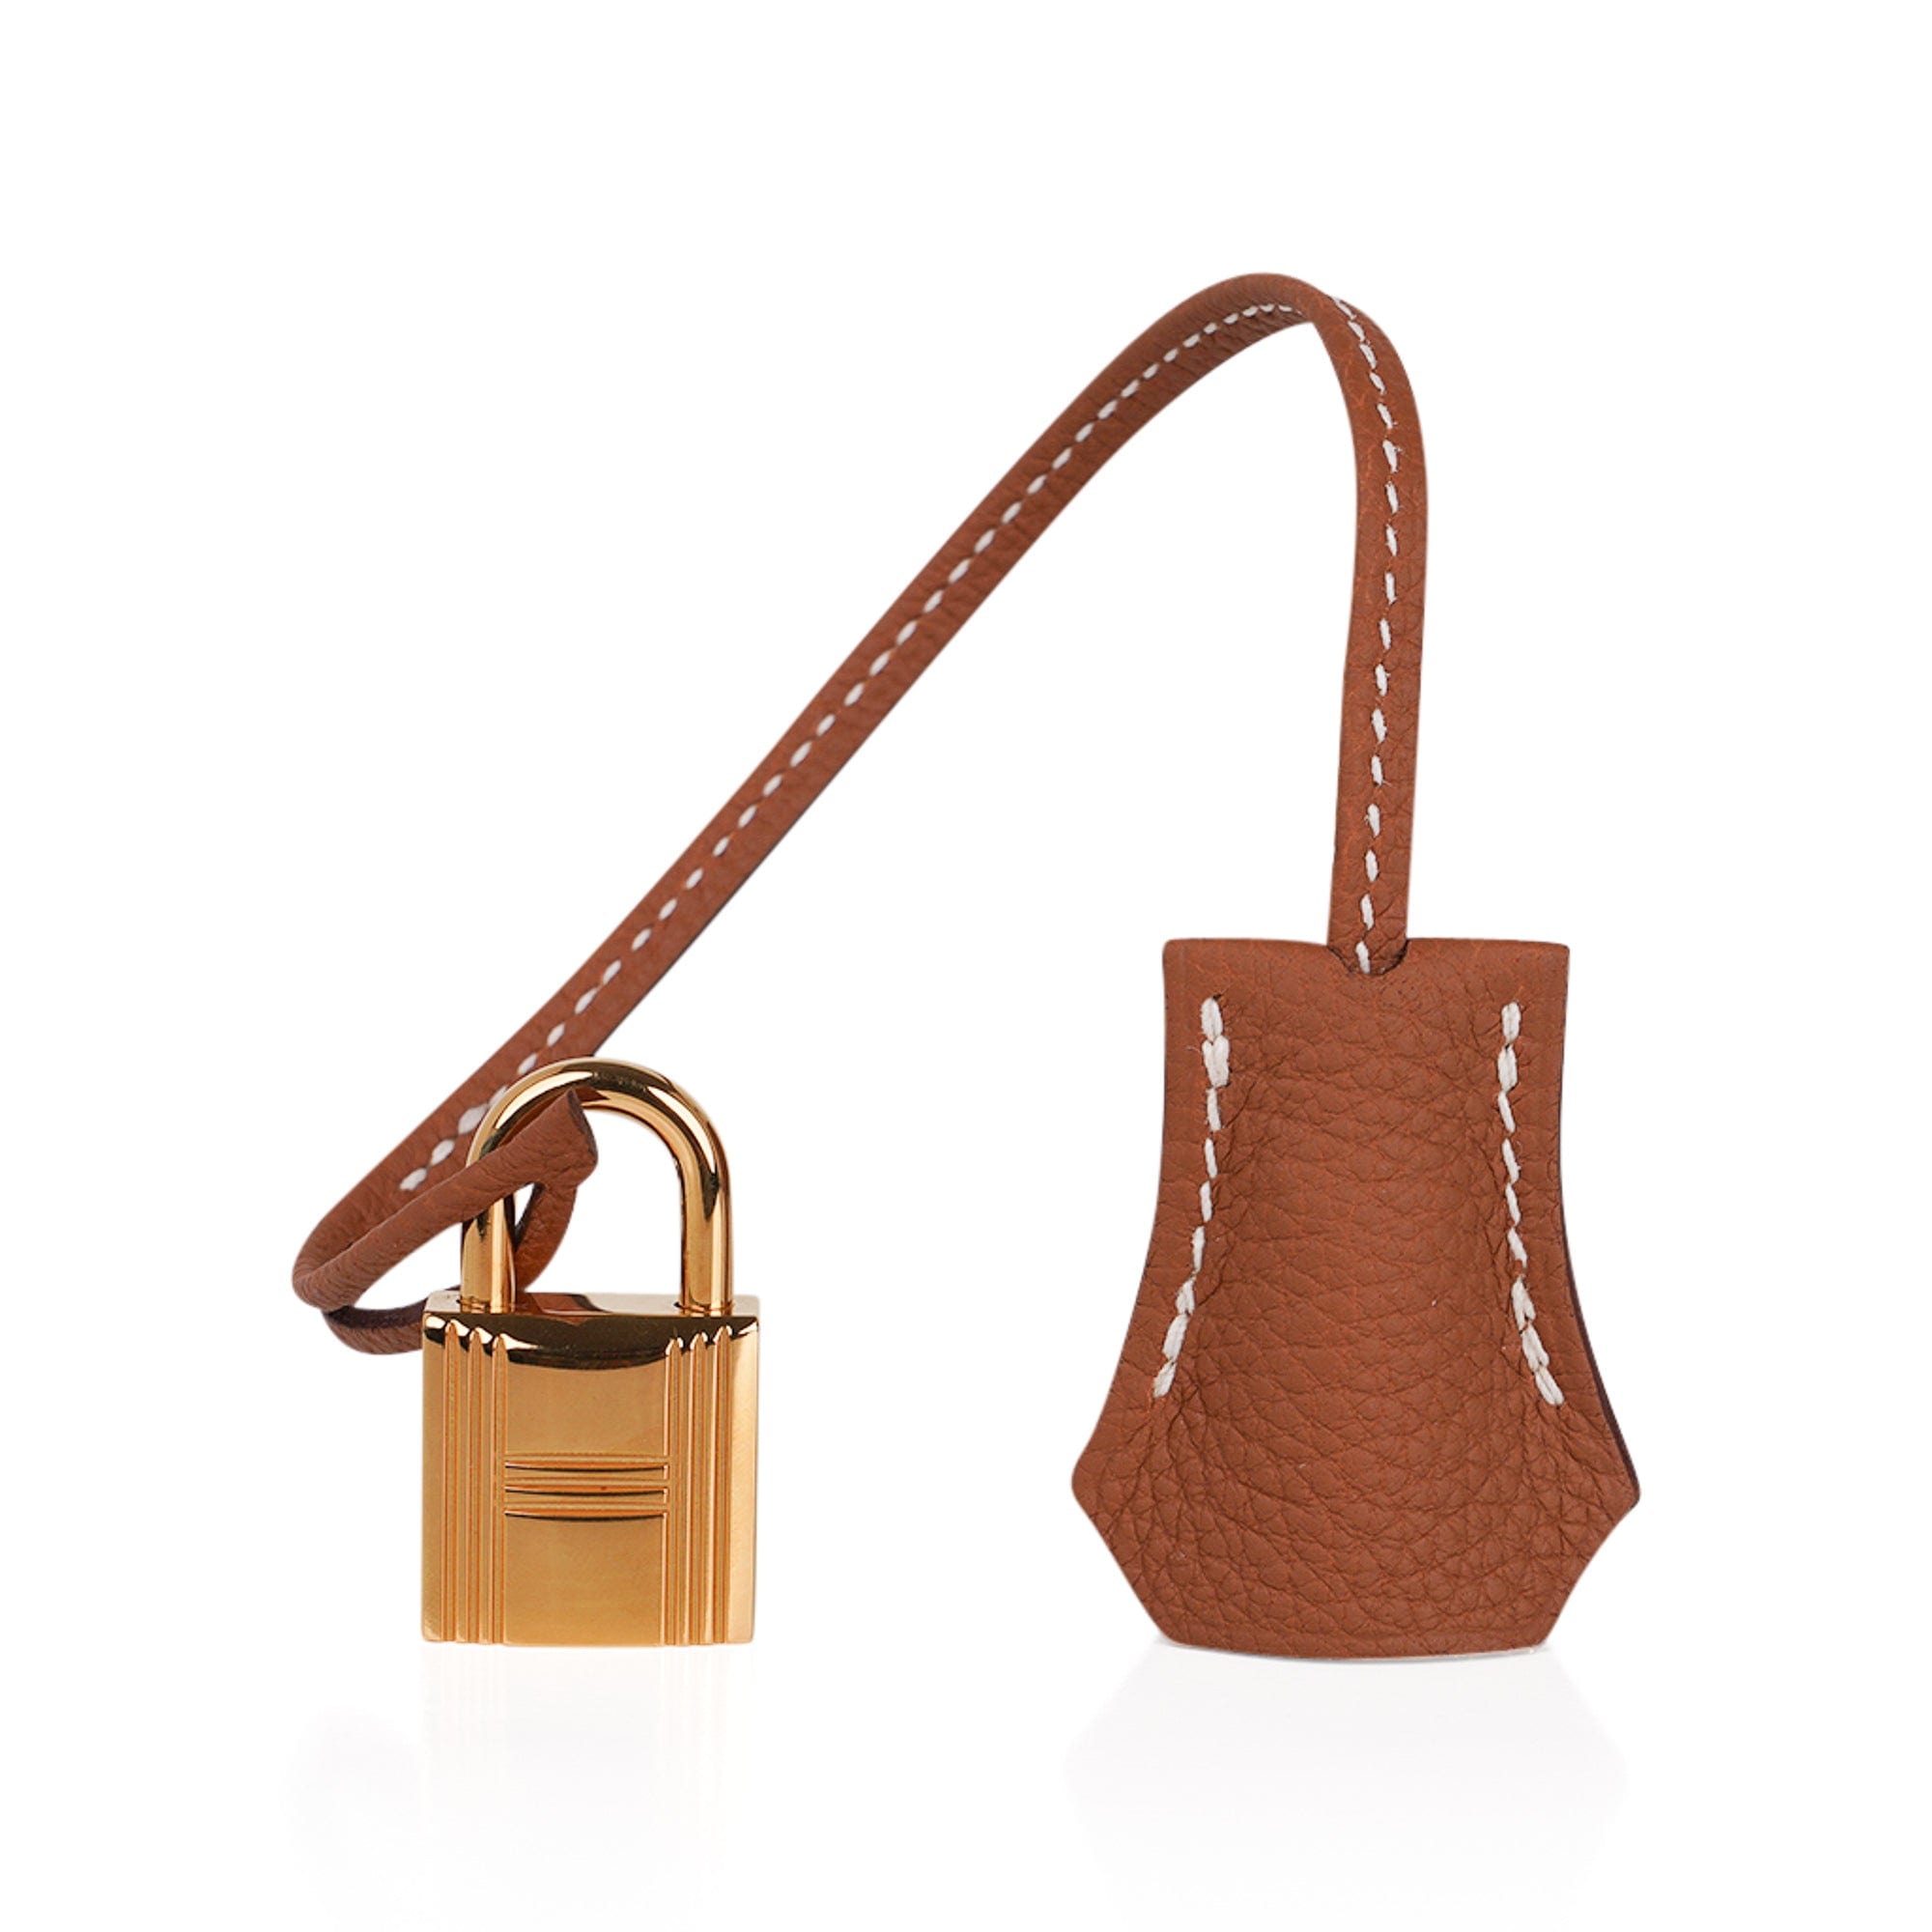 Hermes Birkin bag 30 Gold Togo leather Gold hardware